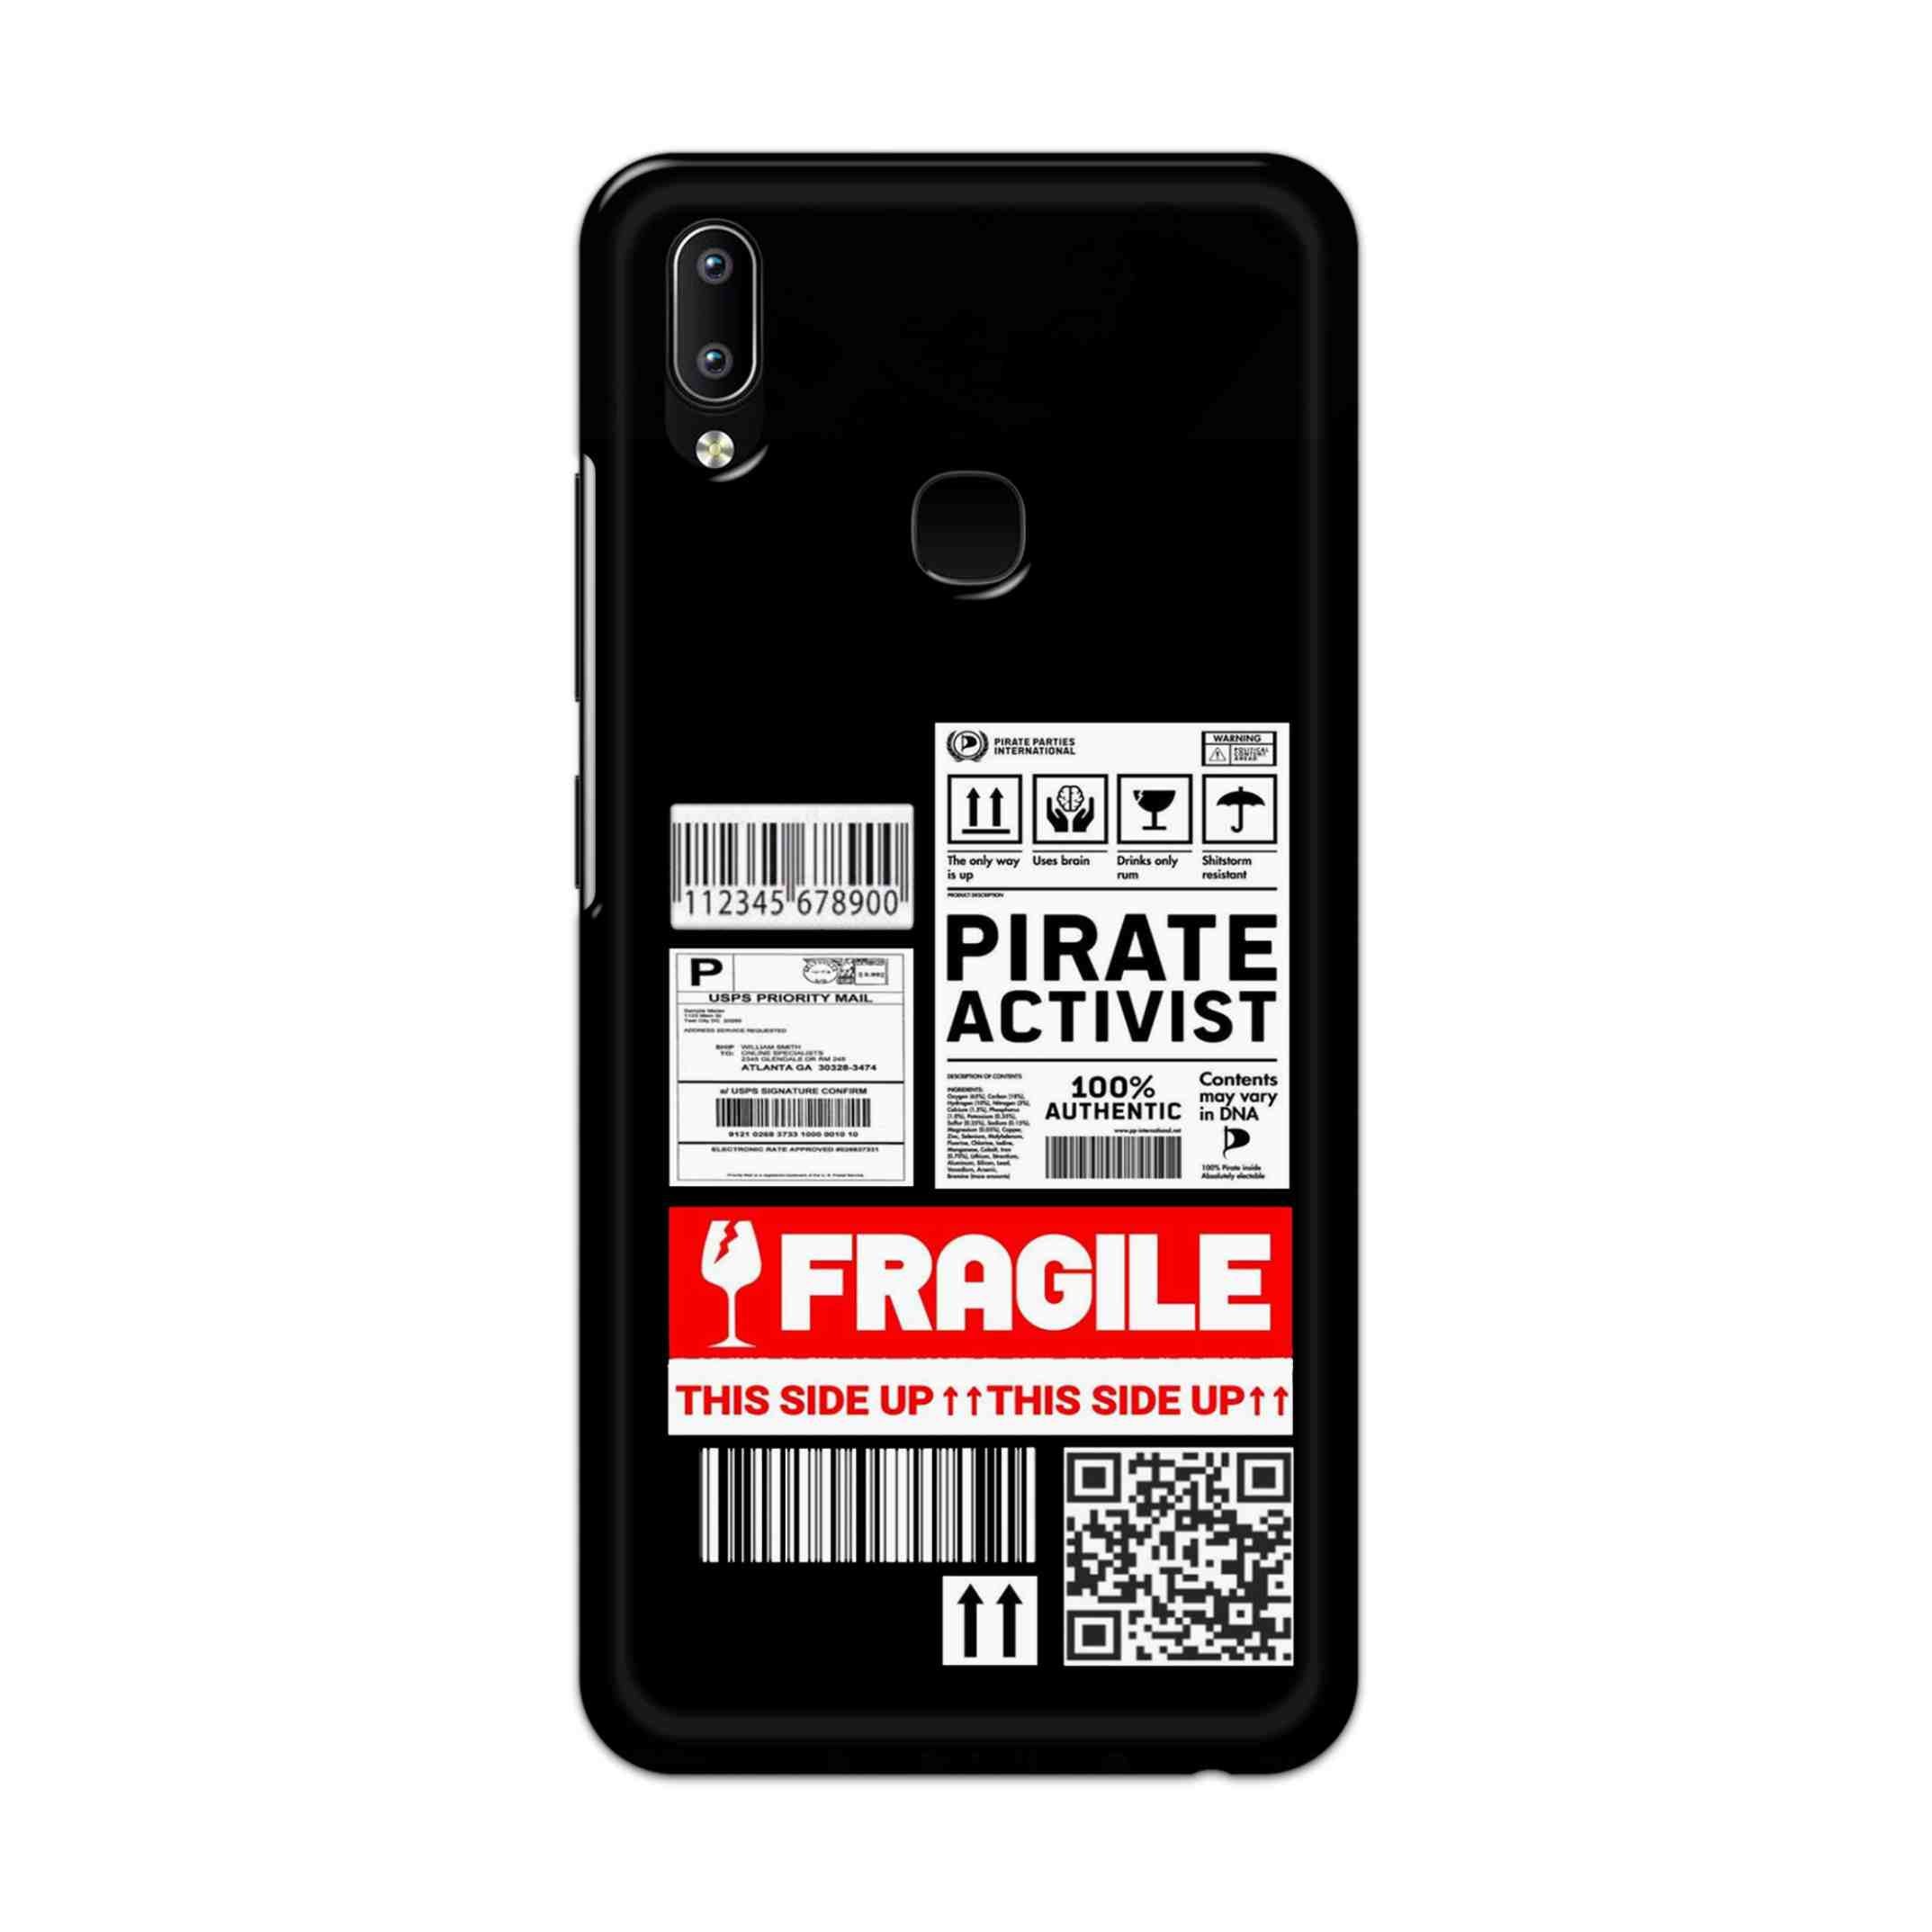 Buy Fragile Hard Back Mobile Phone Case Cover For Vivo Y95 / Y93 / Y91 Online